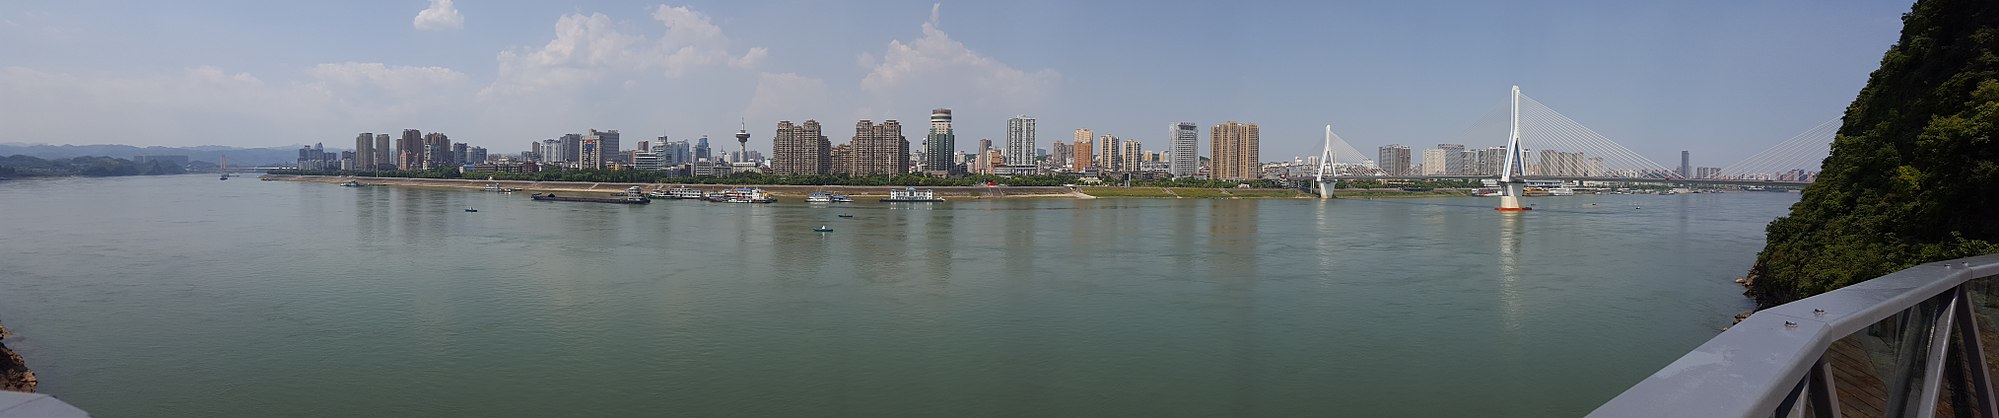 Yichang skyline